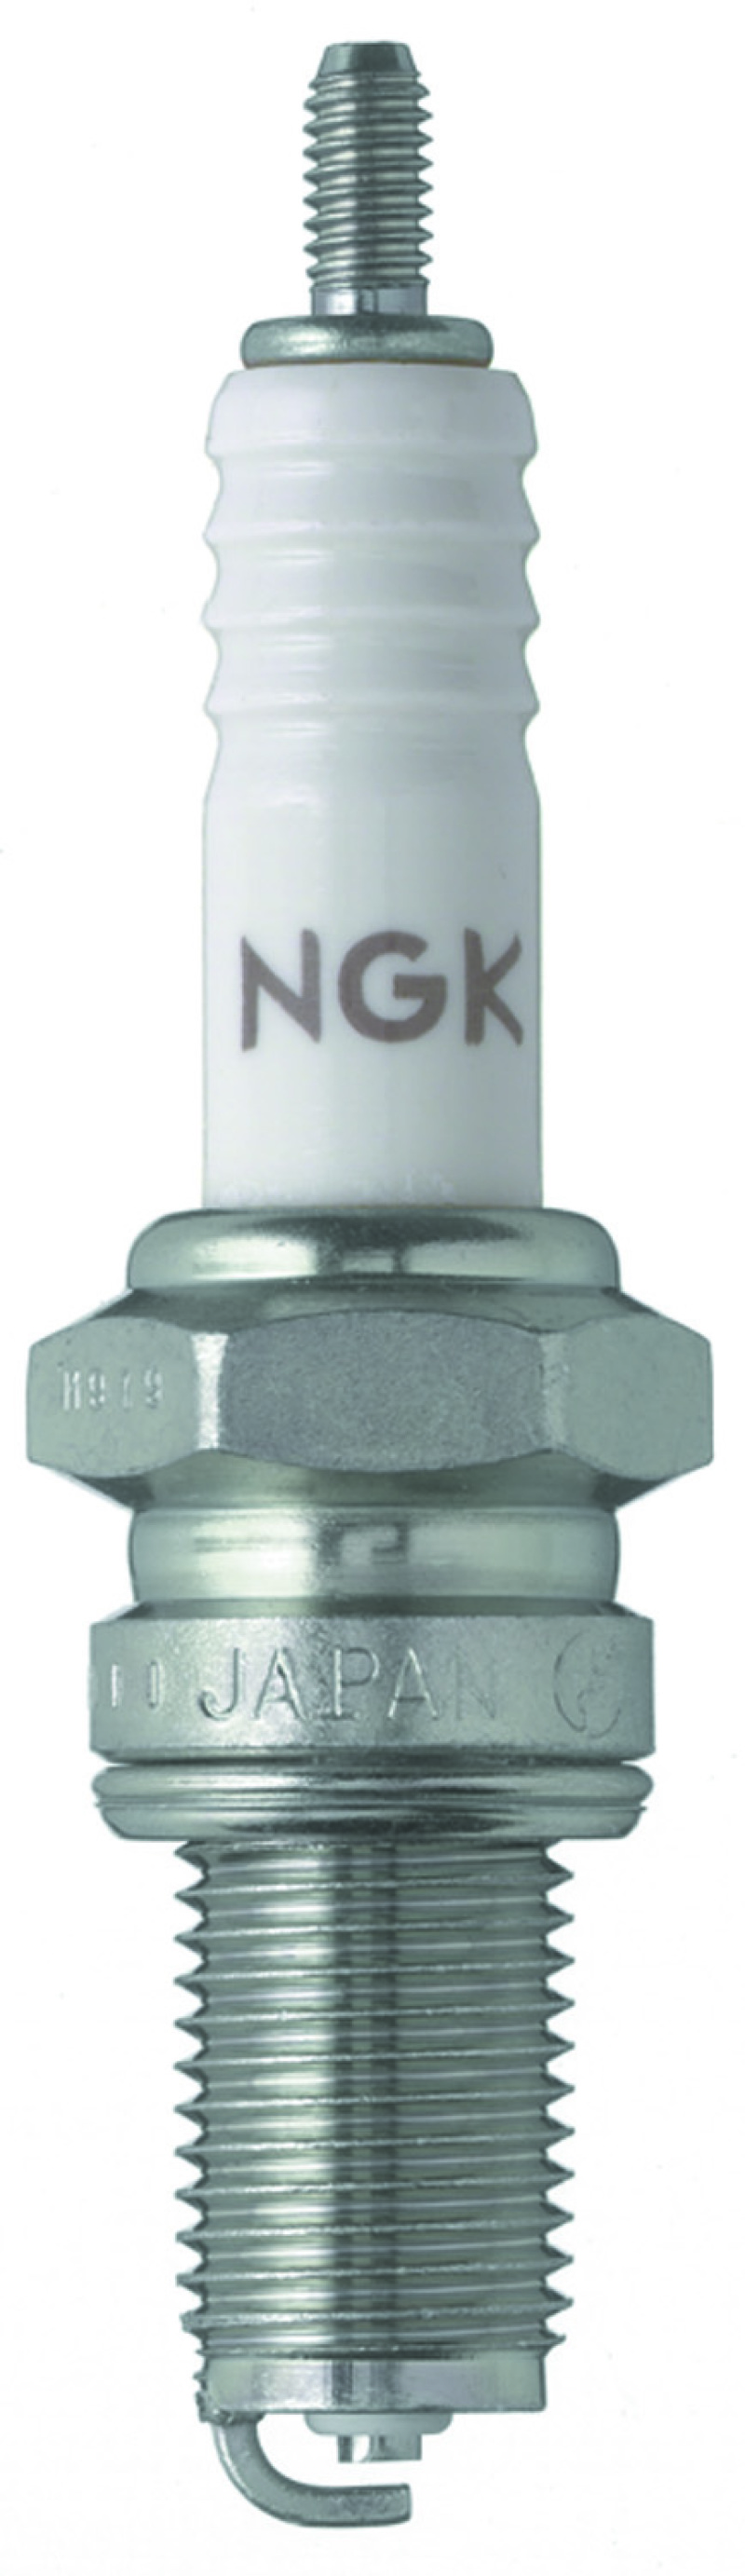 NGK Standard Spark Plug Box of 10 (D8EA) - 2120